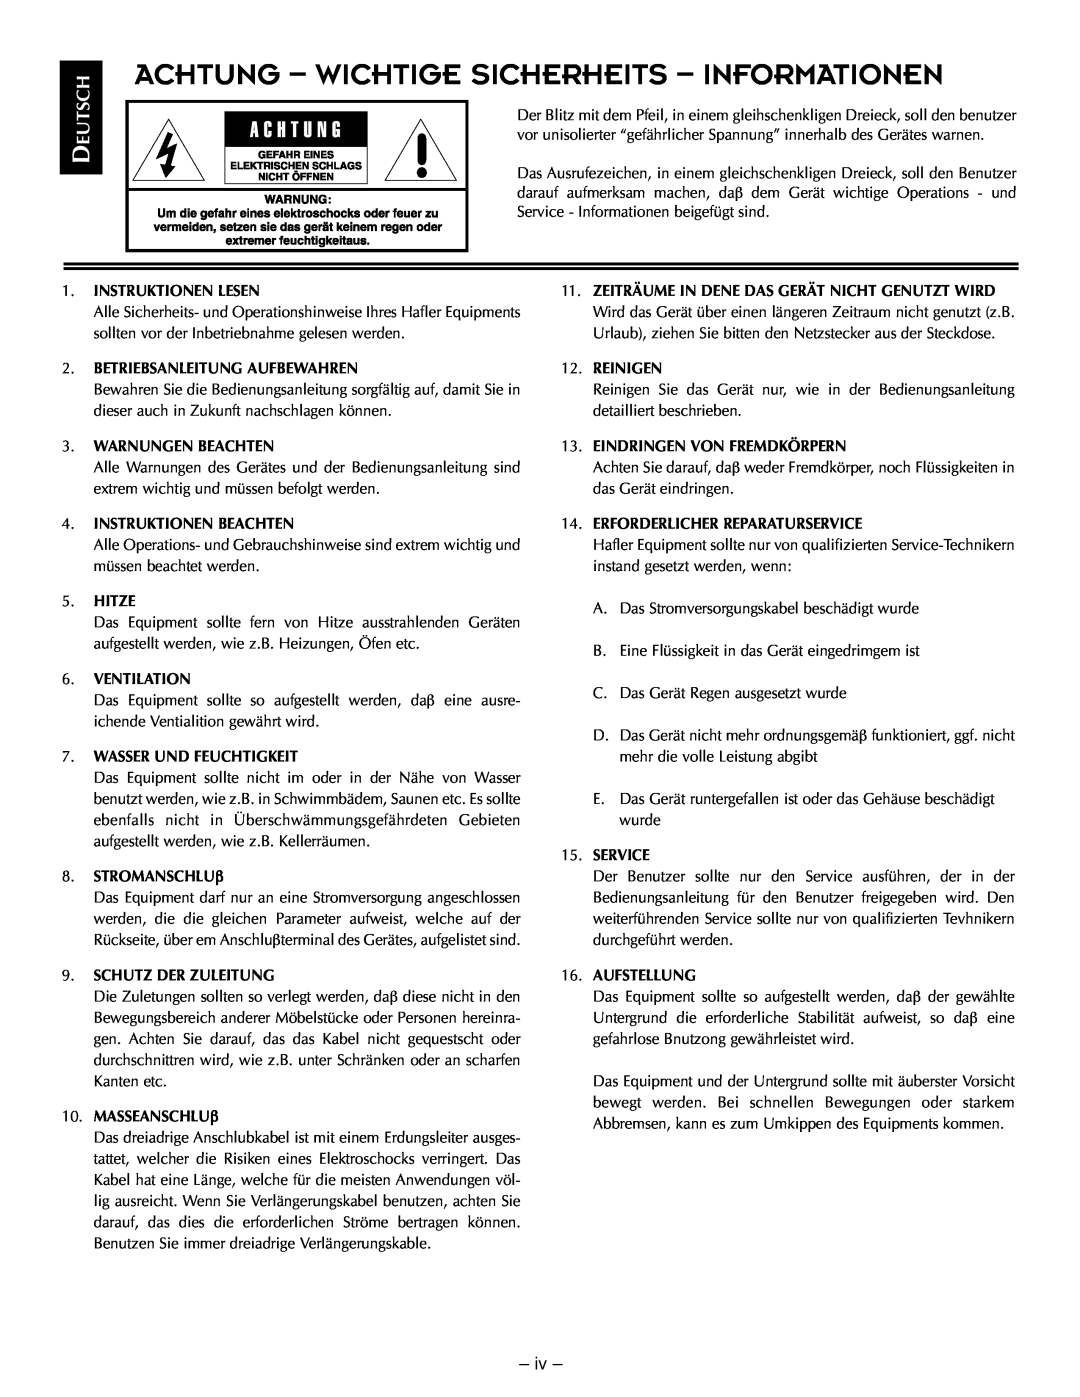 Hafler TRM10.1, TRM12.1 manual Achtung - Wichtige Sicherheits - Informationen, Deutsch, iv 